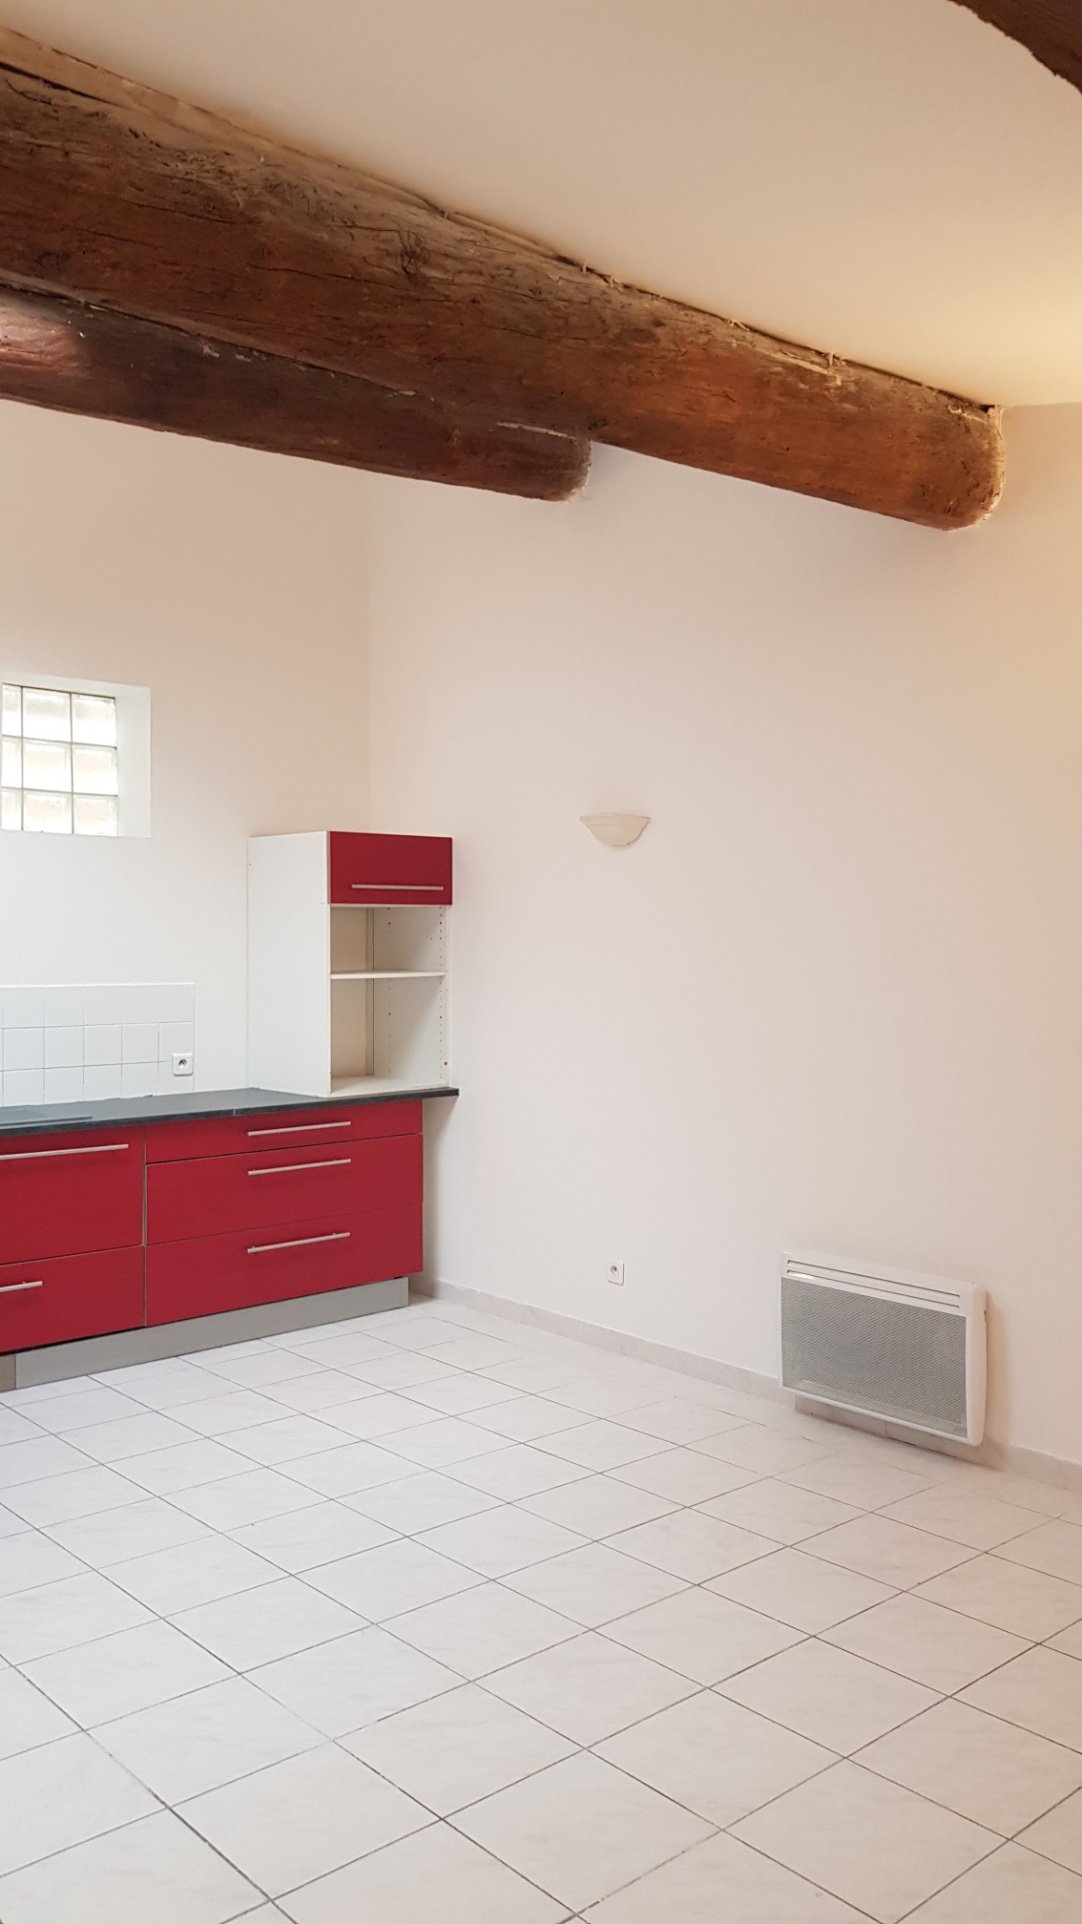 Appartement Appartement Lézignan-Corbières 600€ Grimois Immobilier